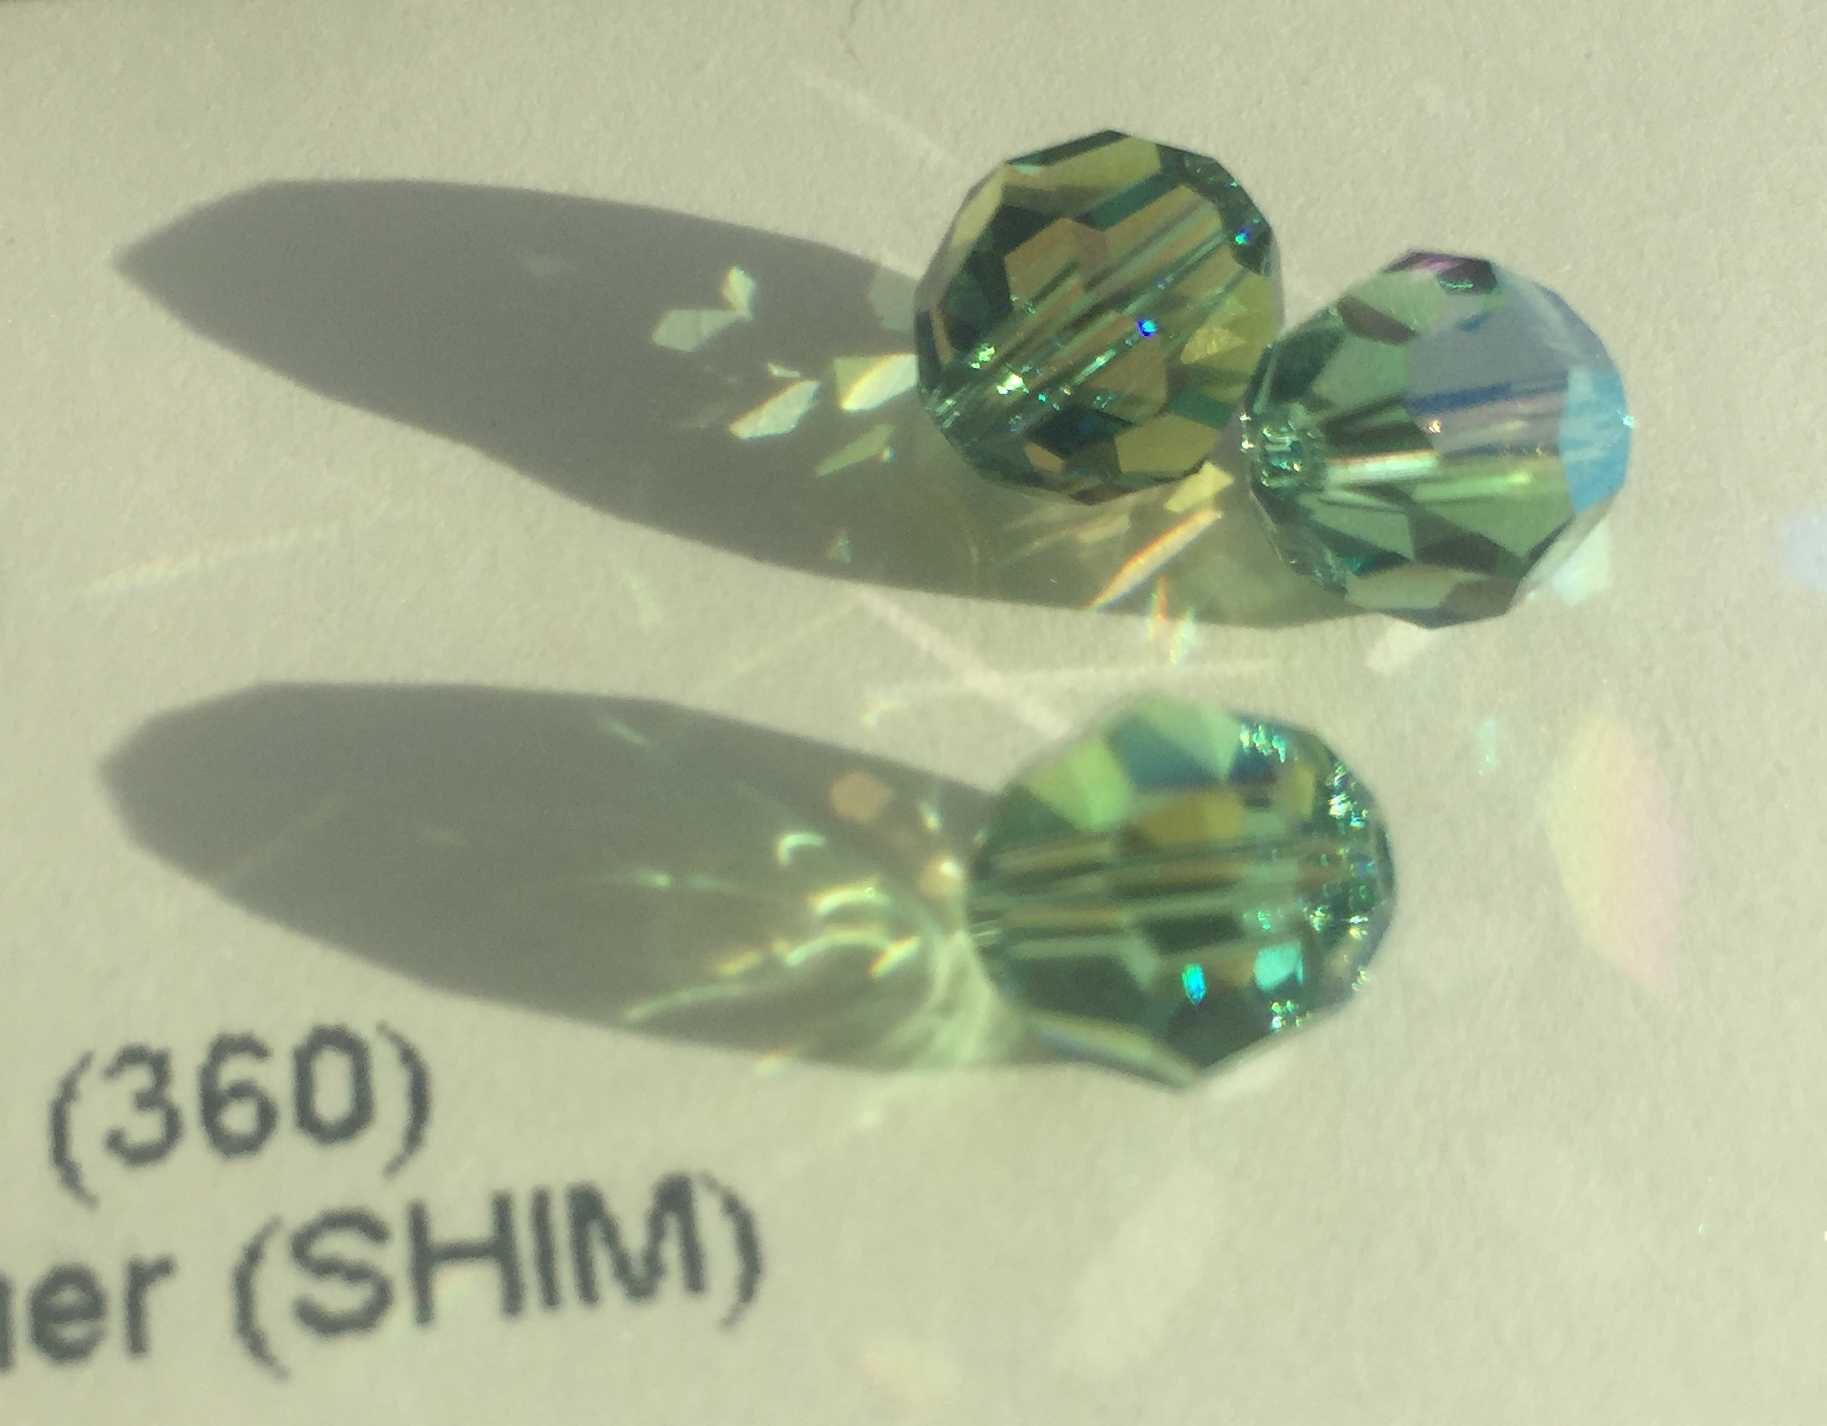 Bild: 5000 - Erinite Shimmer (360SHIM) - 8mm